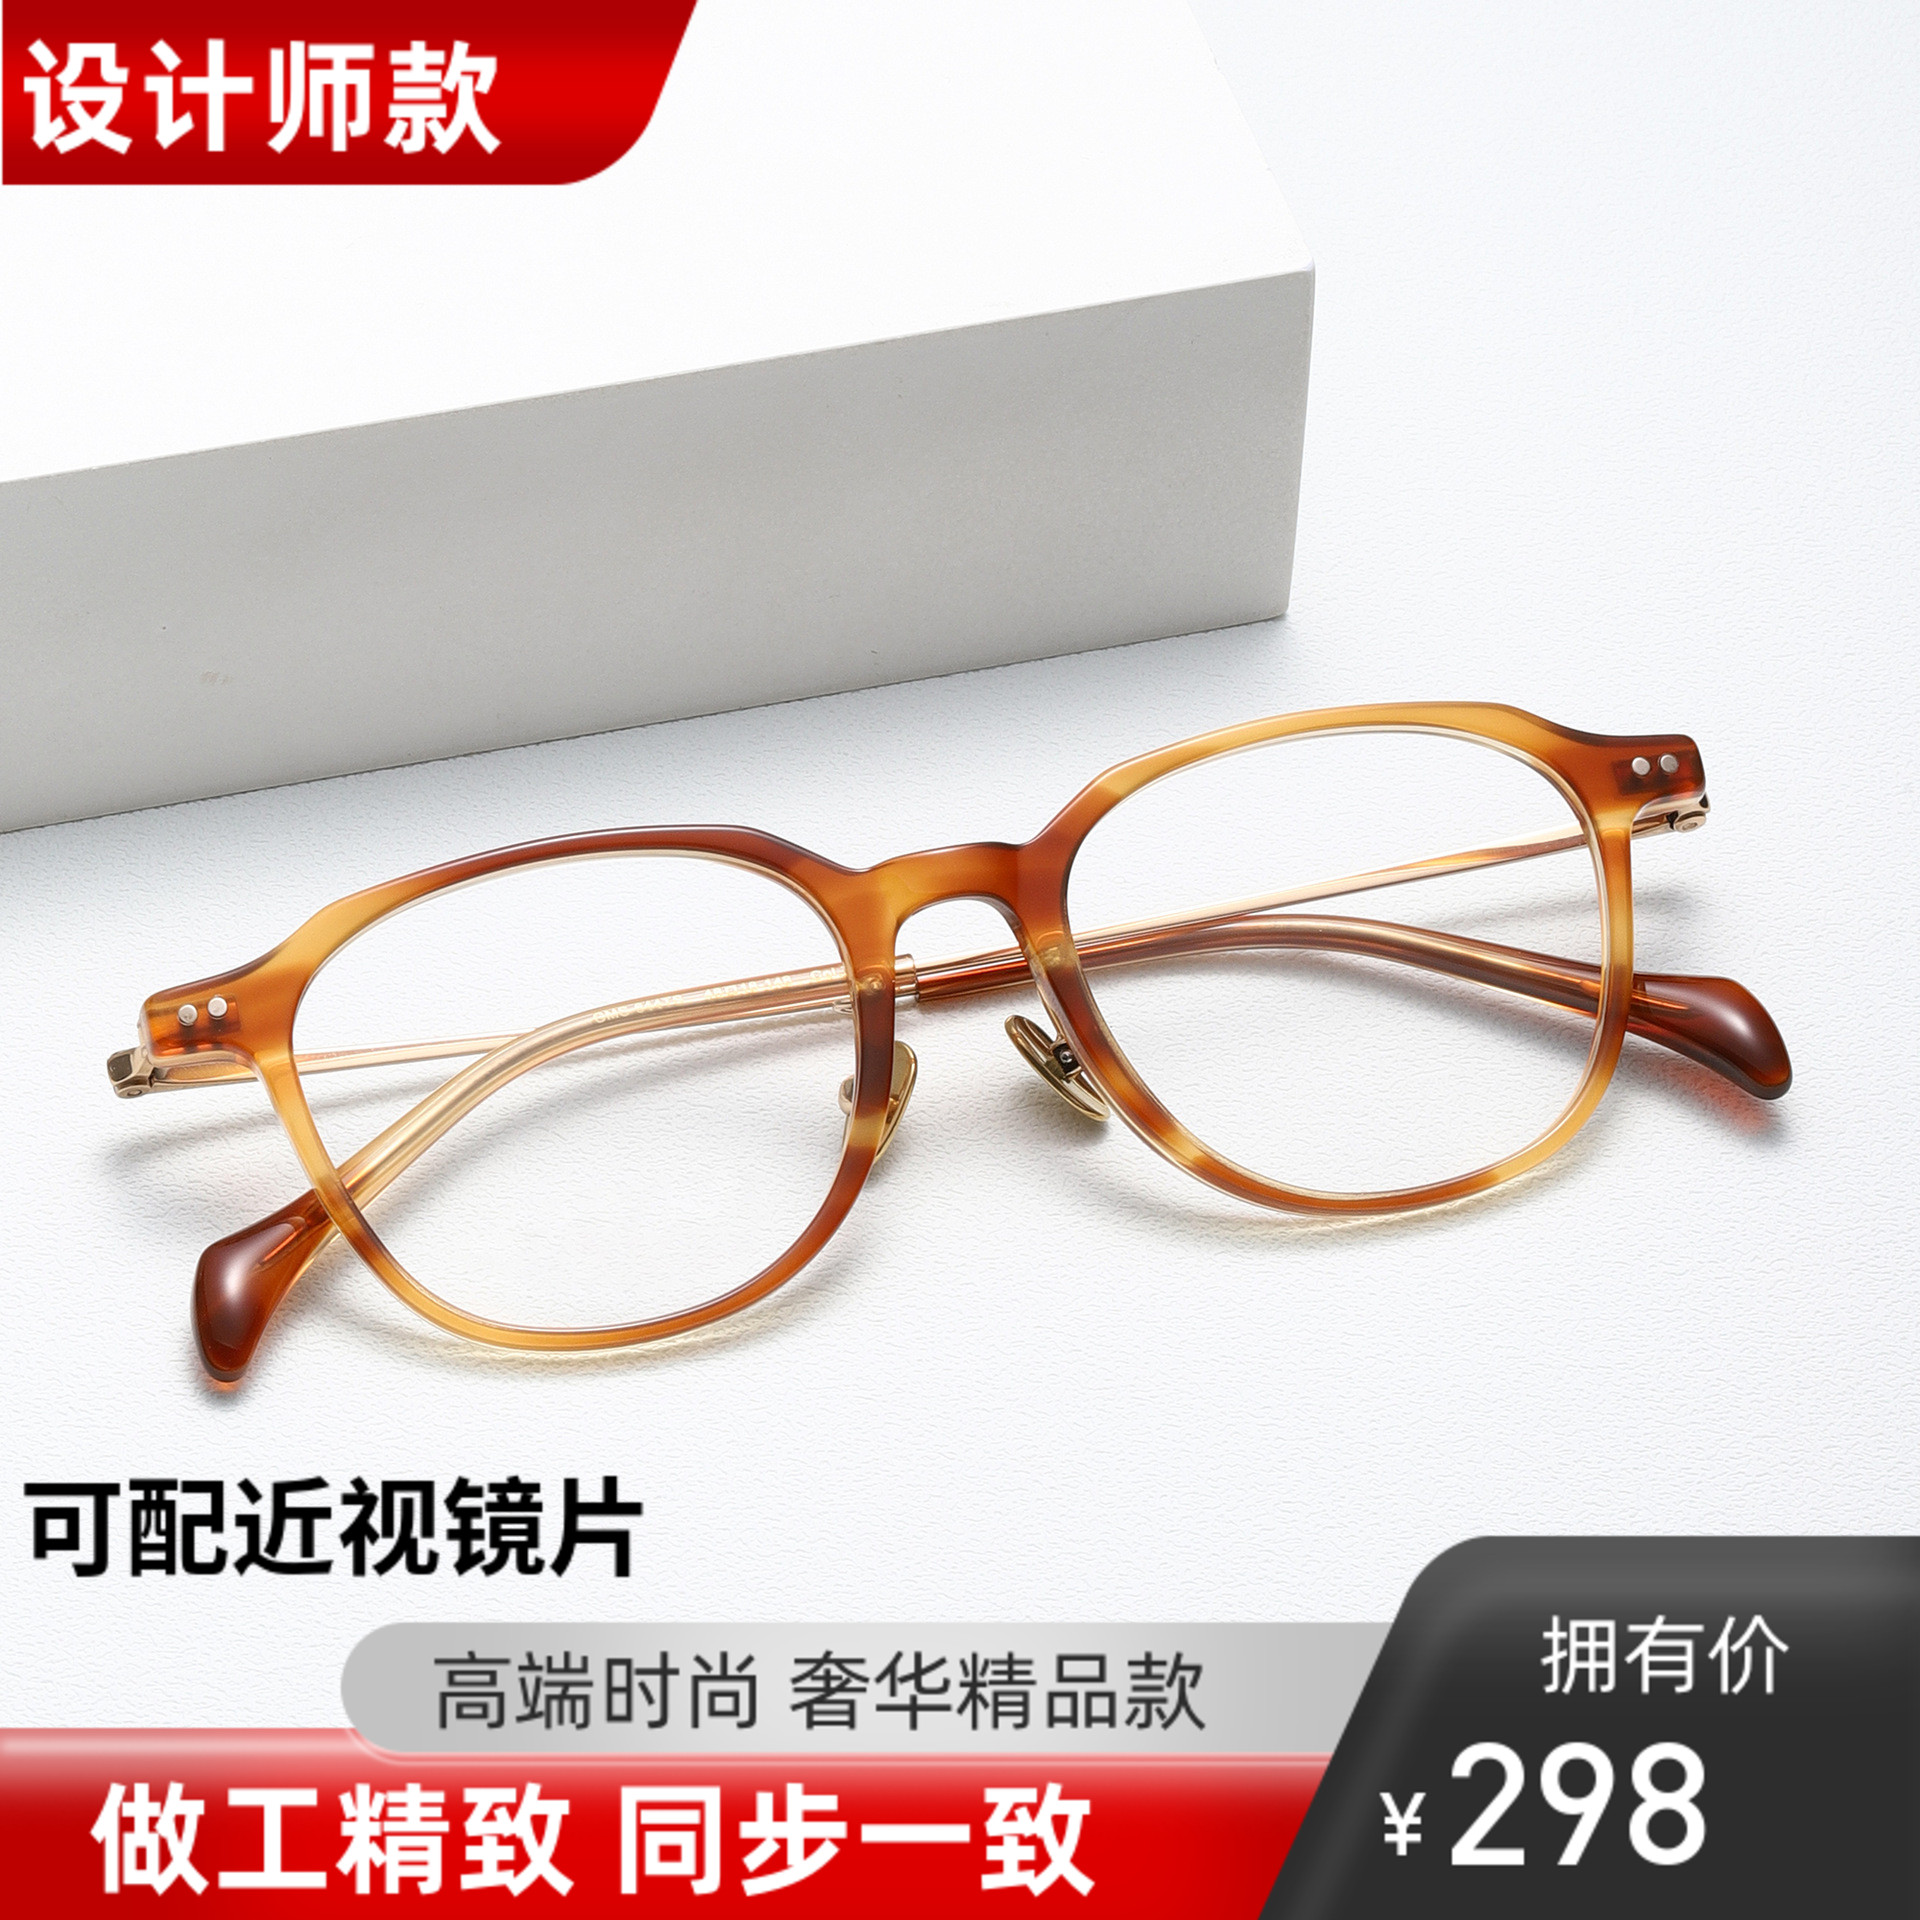 GMS-644TS板材纯钛眼镜框超轻近视镜架圆框MASUNAGA V潮增永同款 ZIPPO/瑞士军刀/眼镜 眼镜架 原图主图